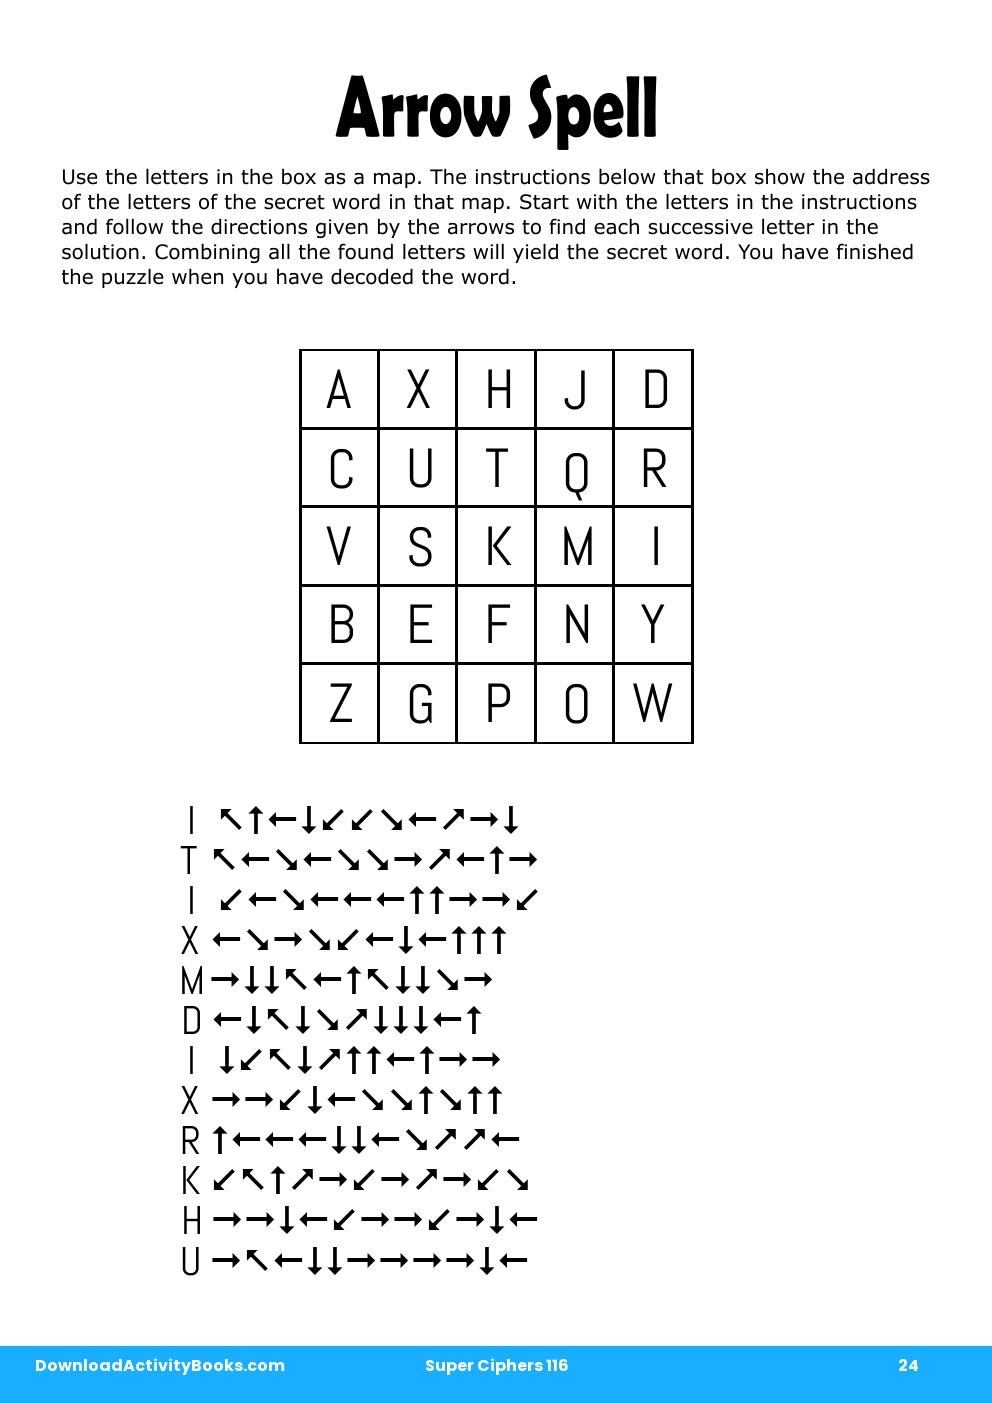 Arrow Spell in Super Ciphers 116